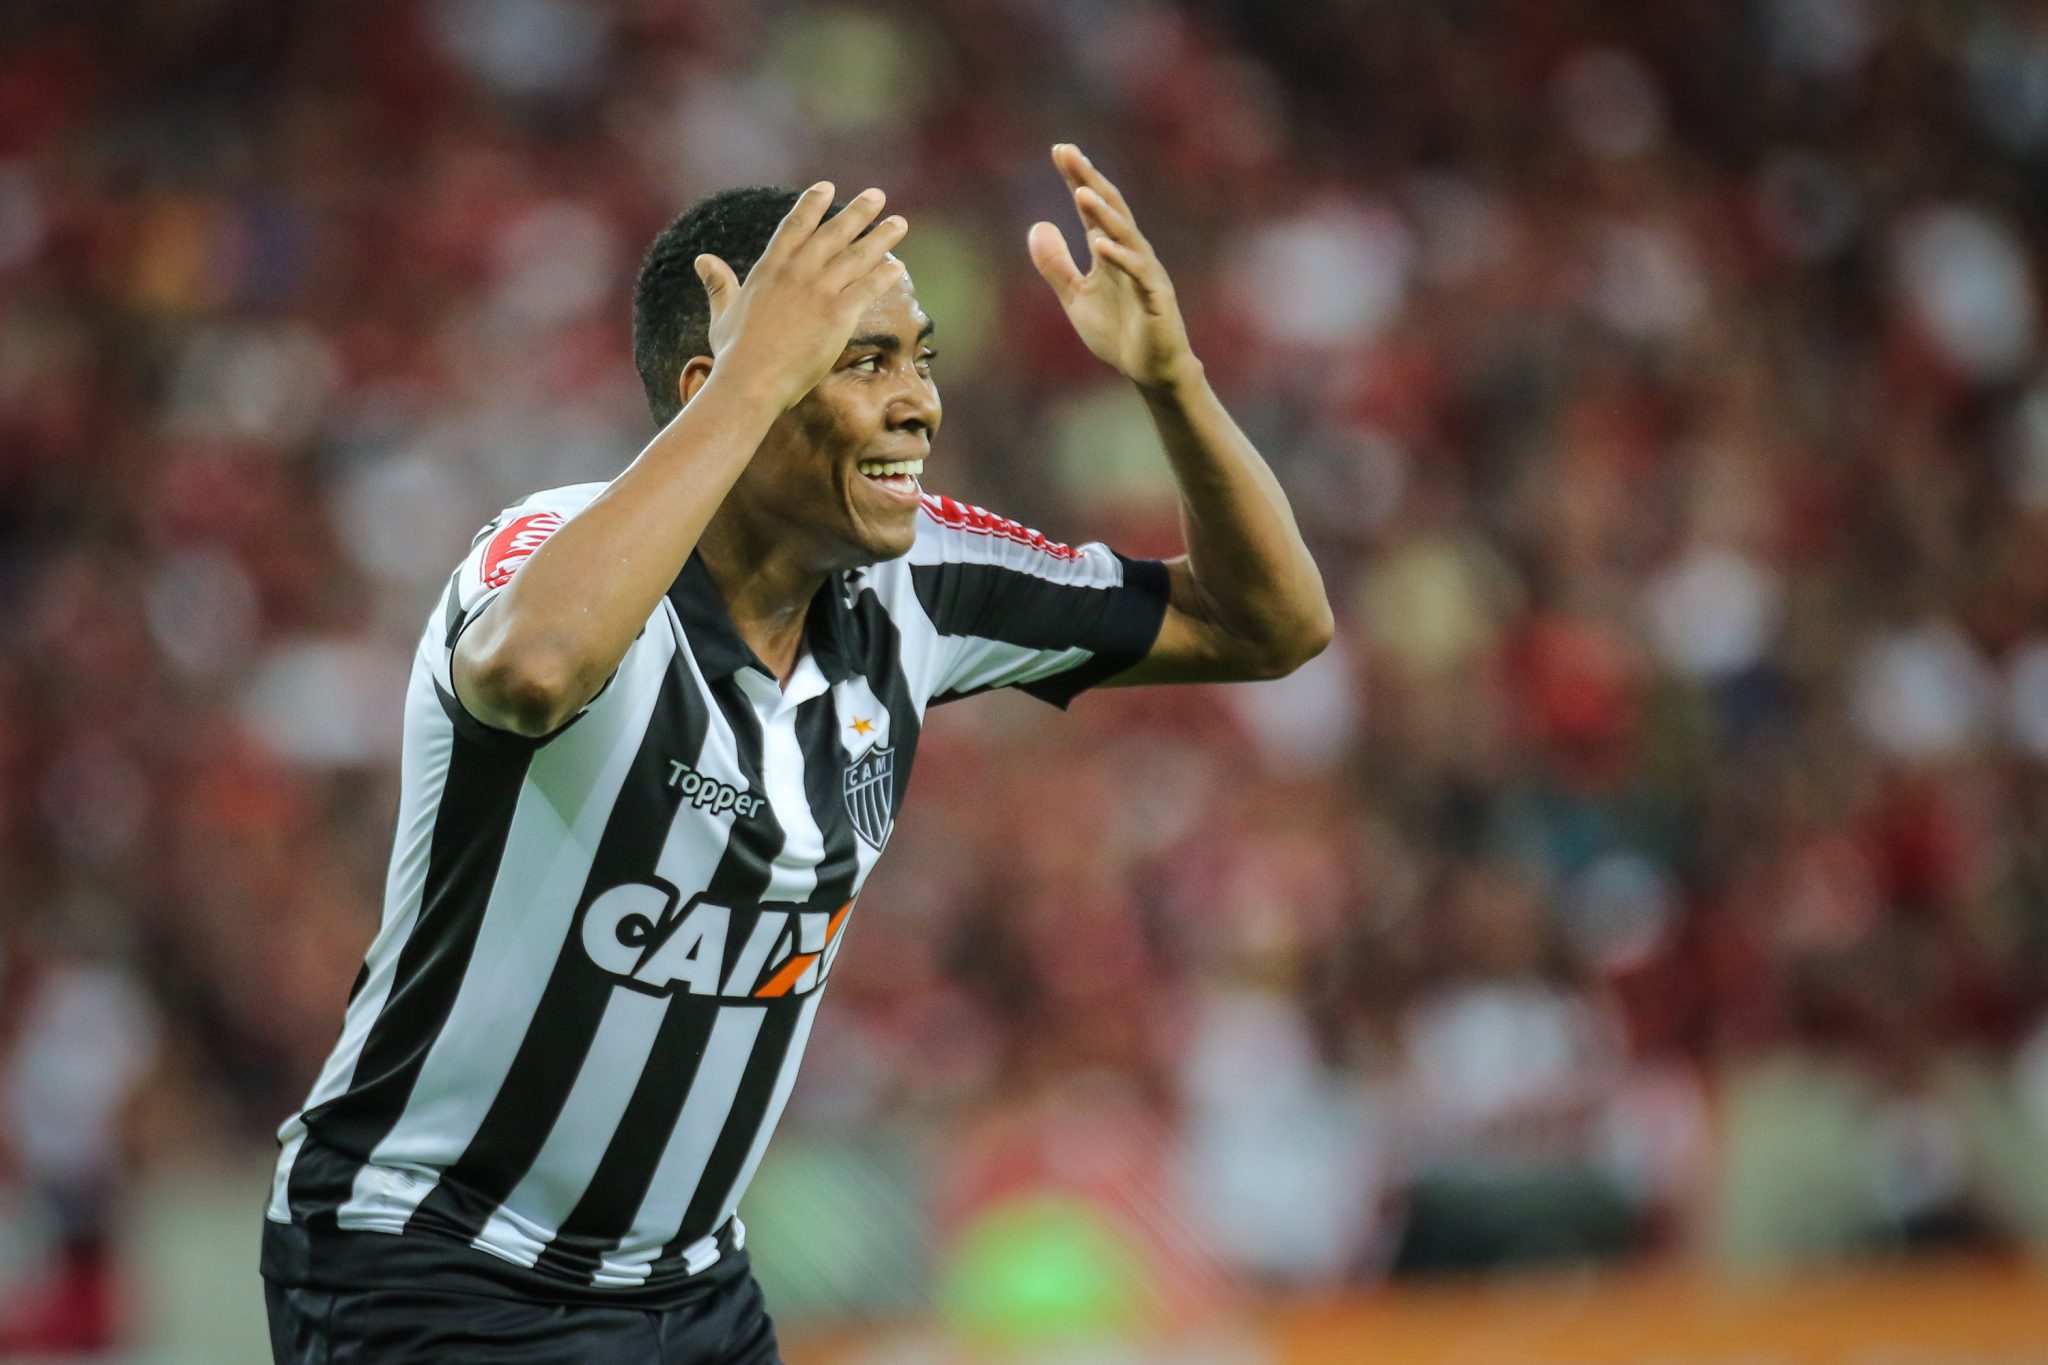 34478802902 84befc4cfc o - Relembre os "primeiros gols" do Galo nas últimas edições do Campeonato Brasileiro